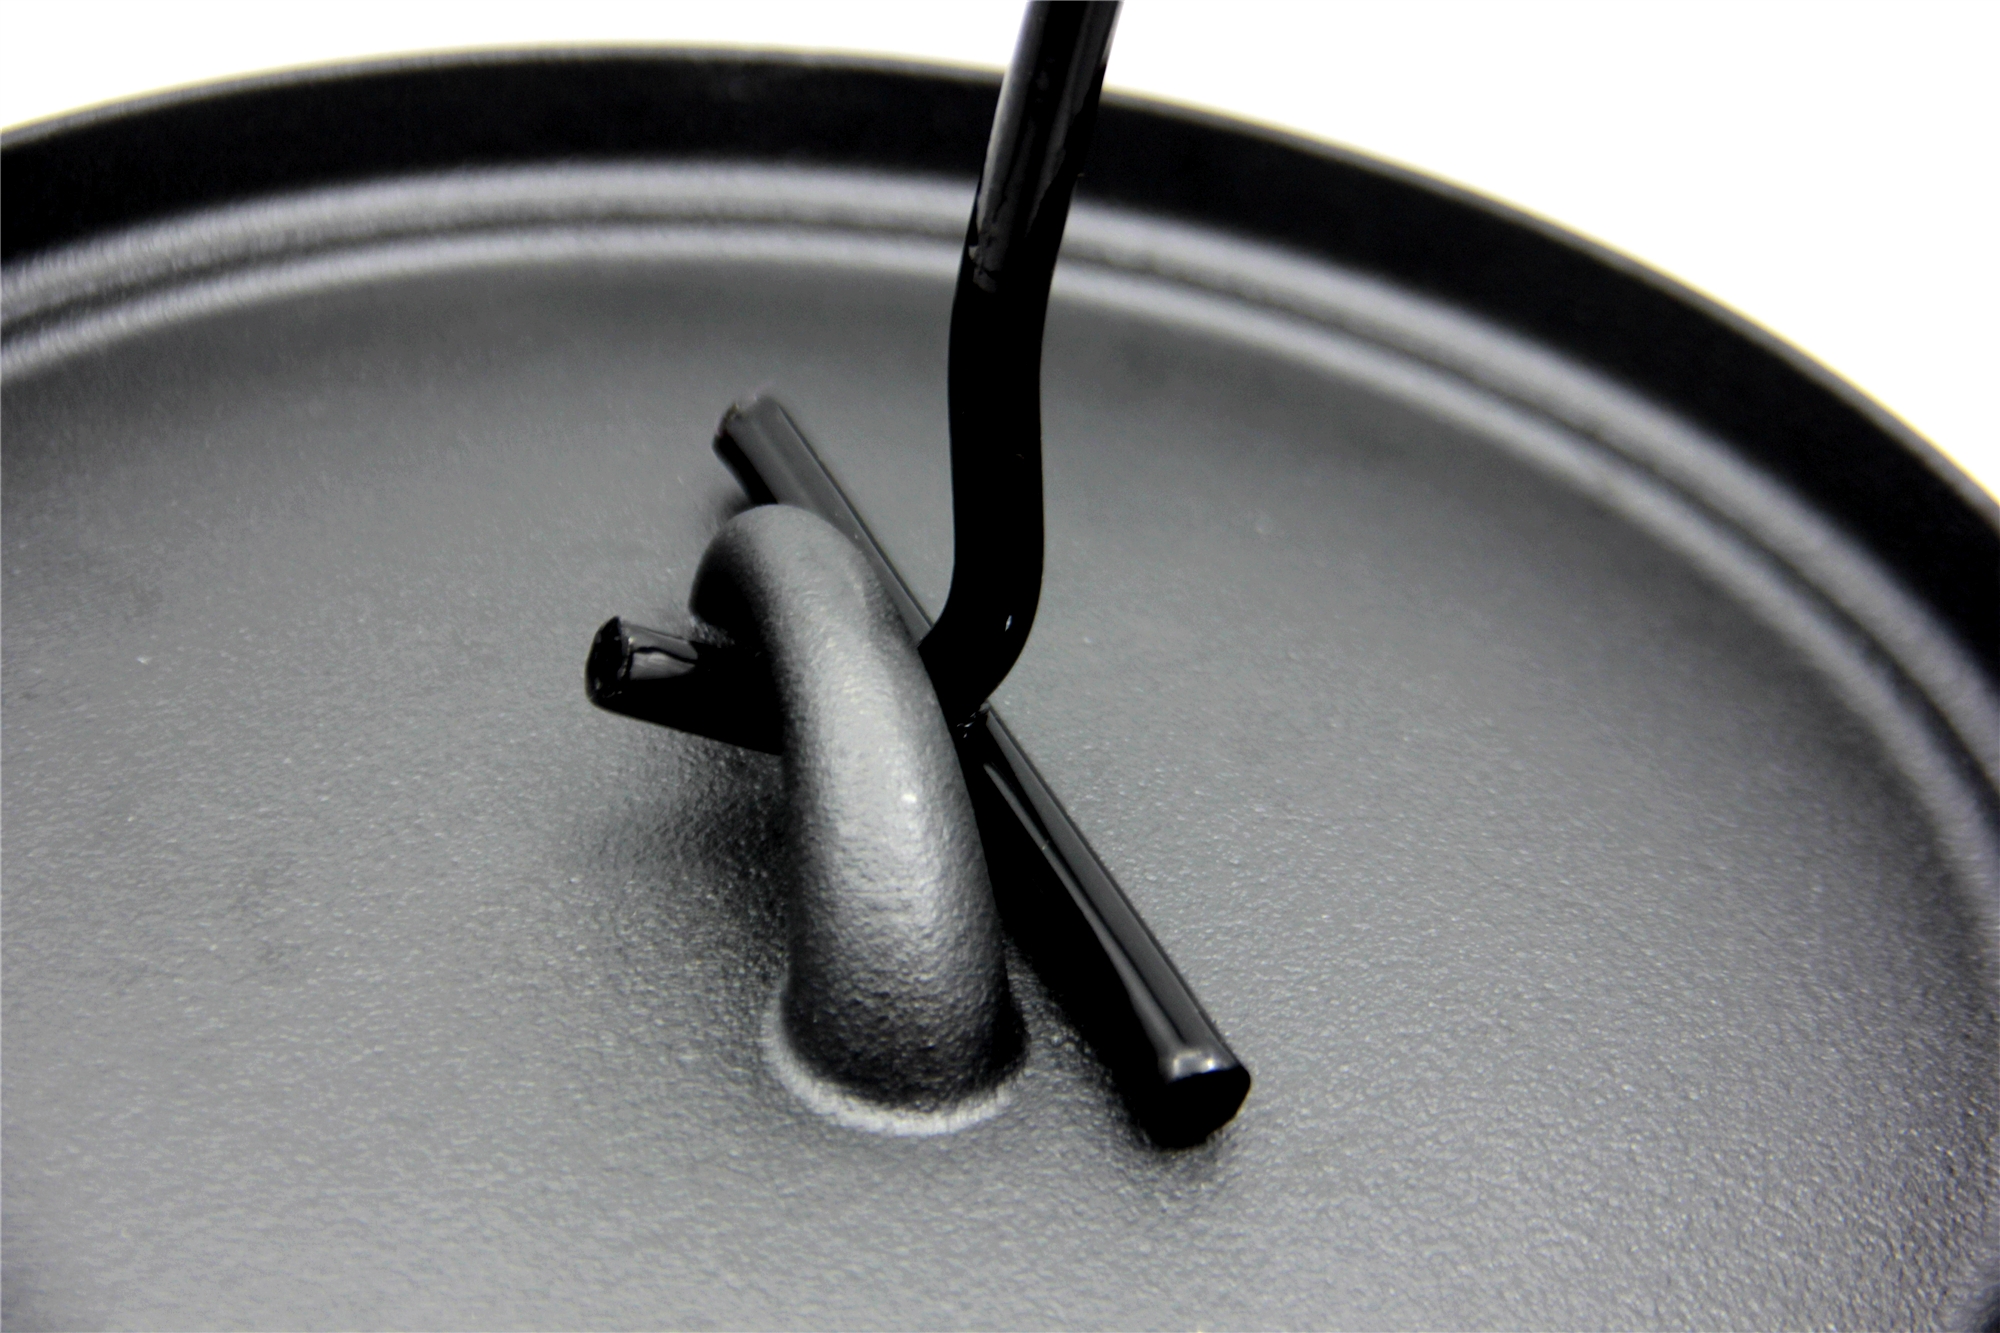 調理用の耐久性のある鋳鉄調理器具セット